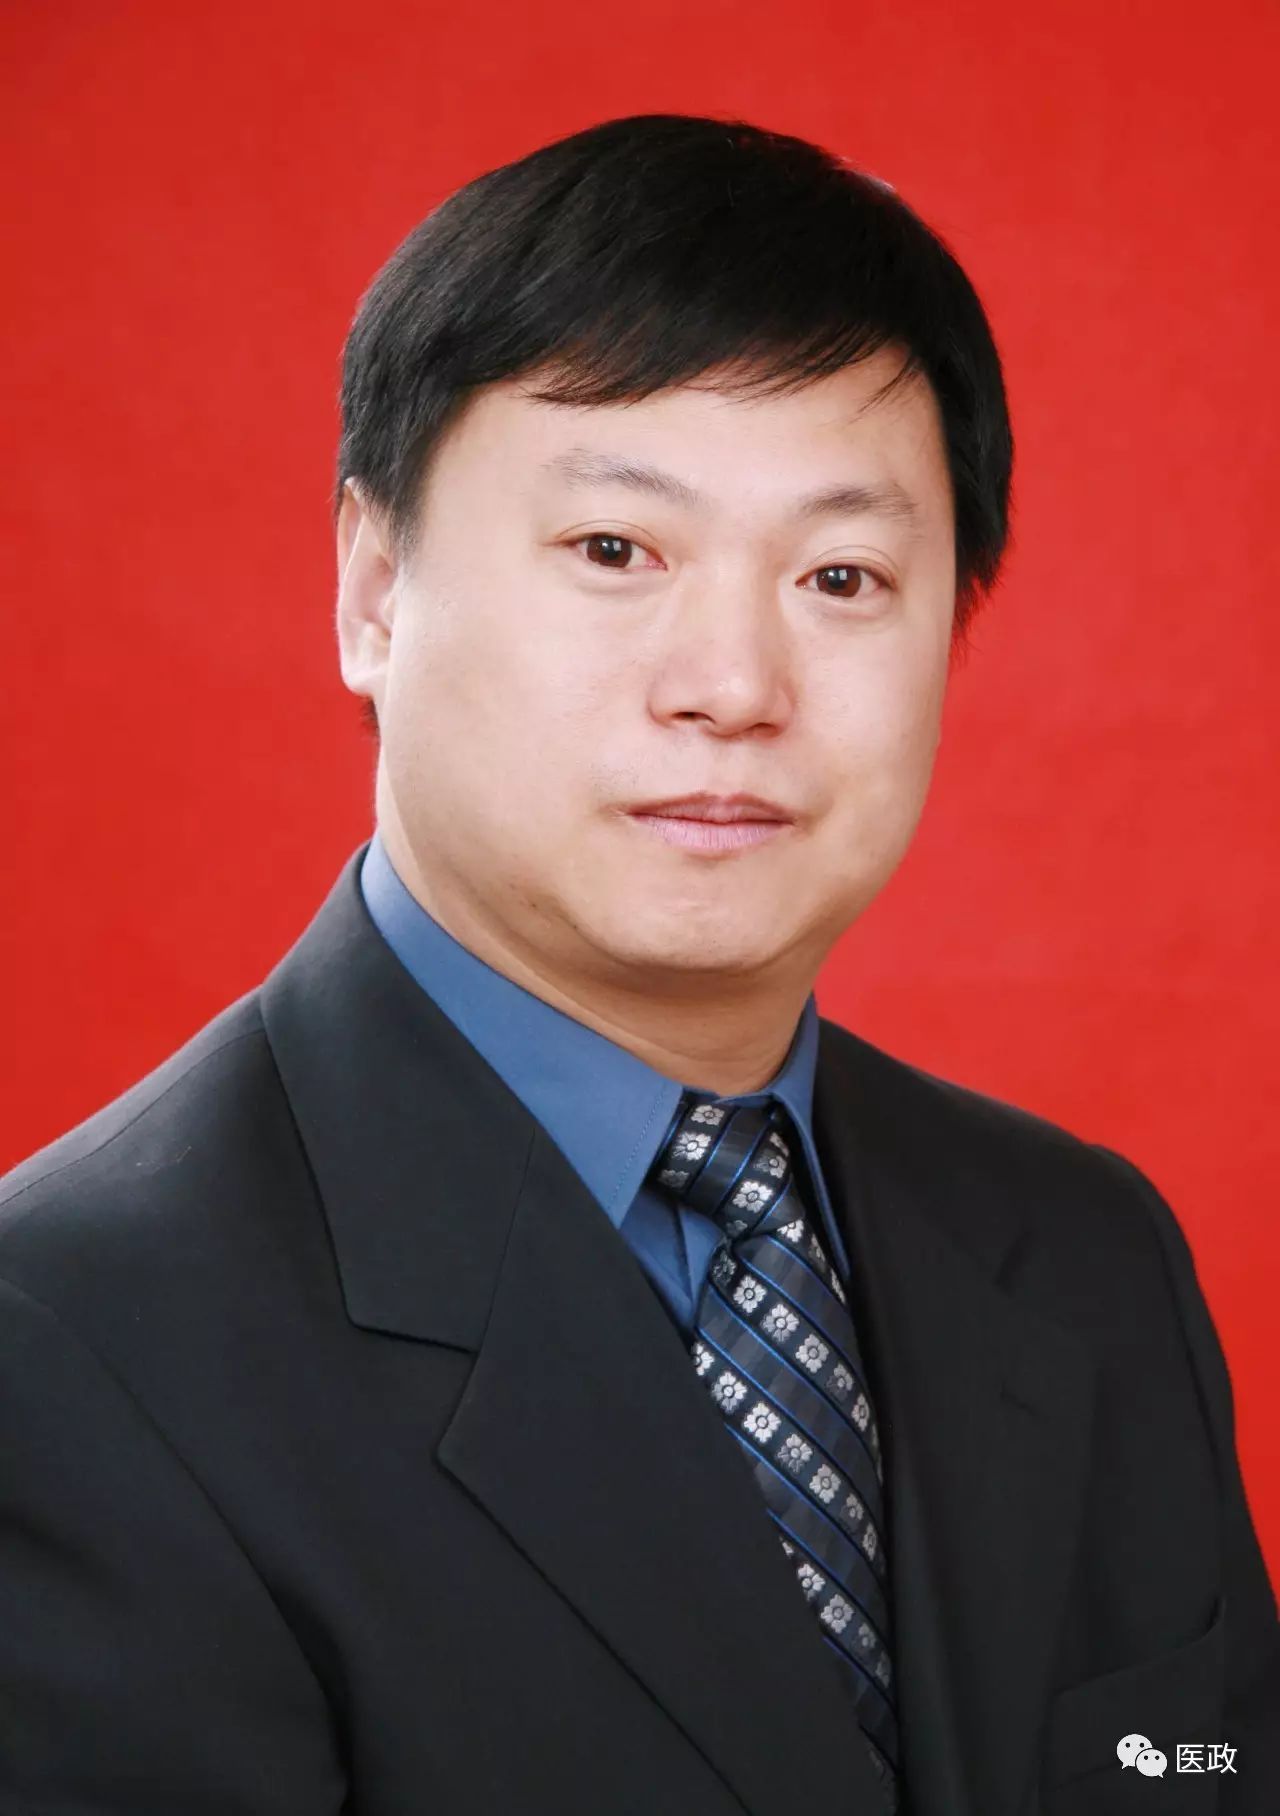 刘斌教授,主任医师,医学博士,博士生导师,现任吉林大学第二医院心